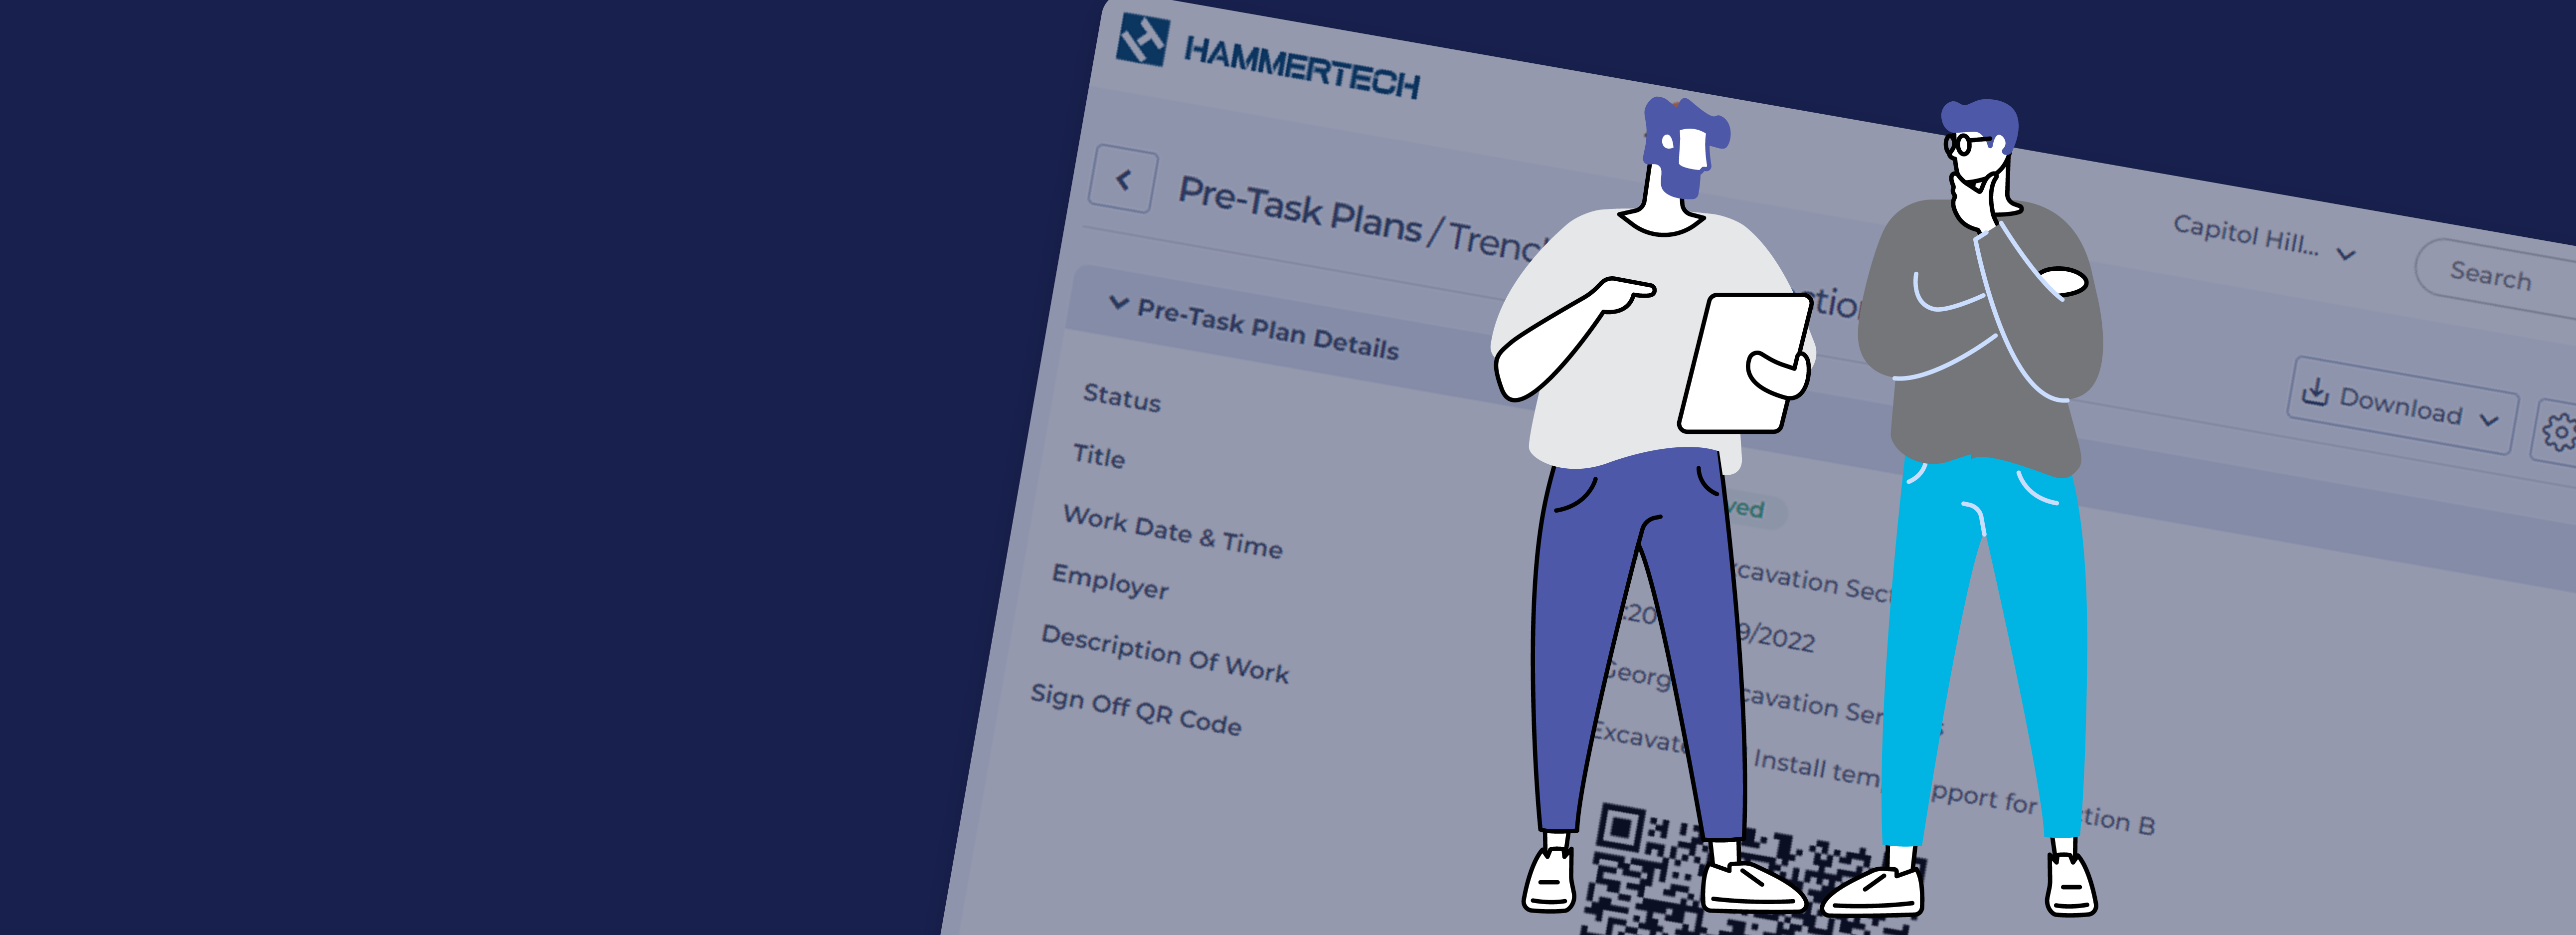 Pre-Task Plan Evolution: Digital Platforms Outperform Paper Methods